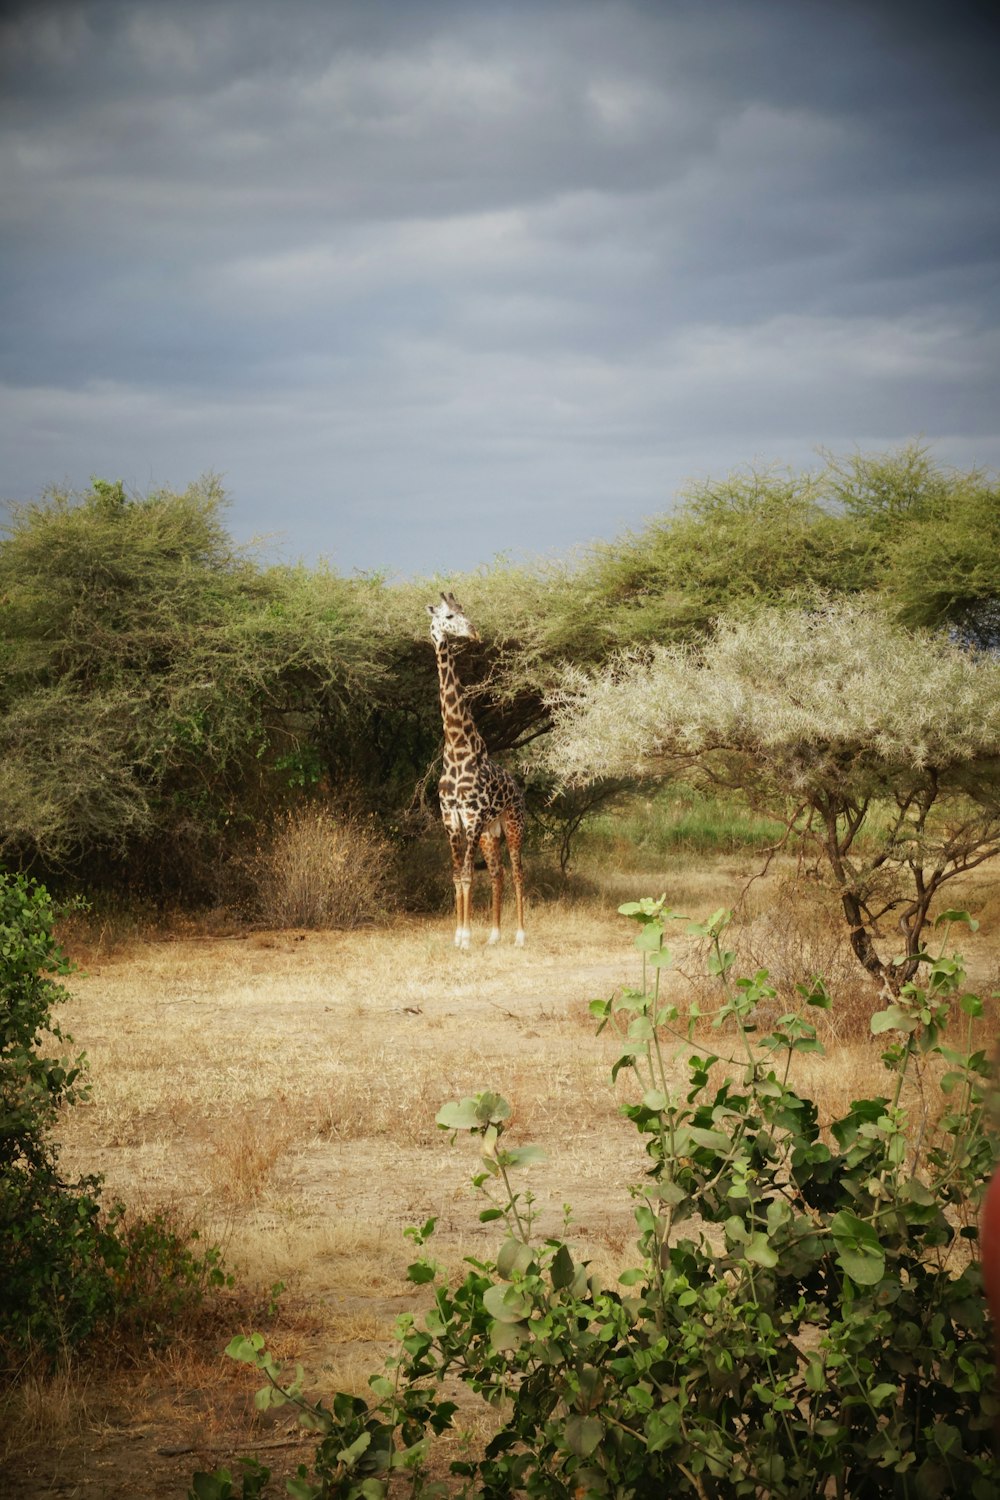 giraffe walking on dirt road during daytime